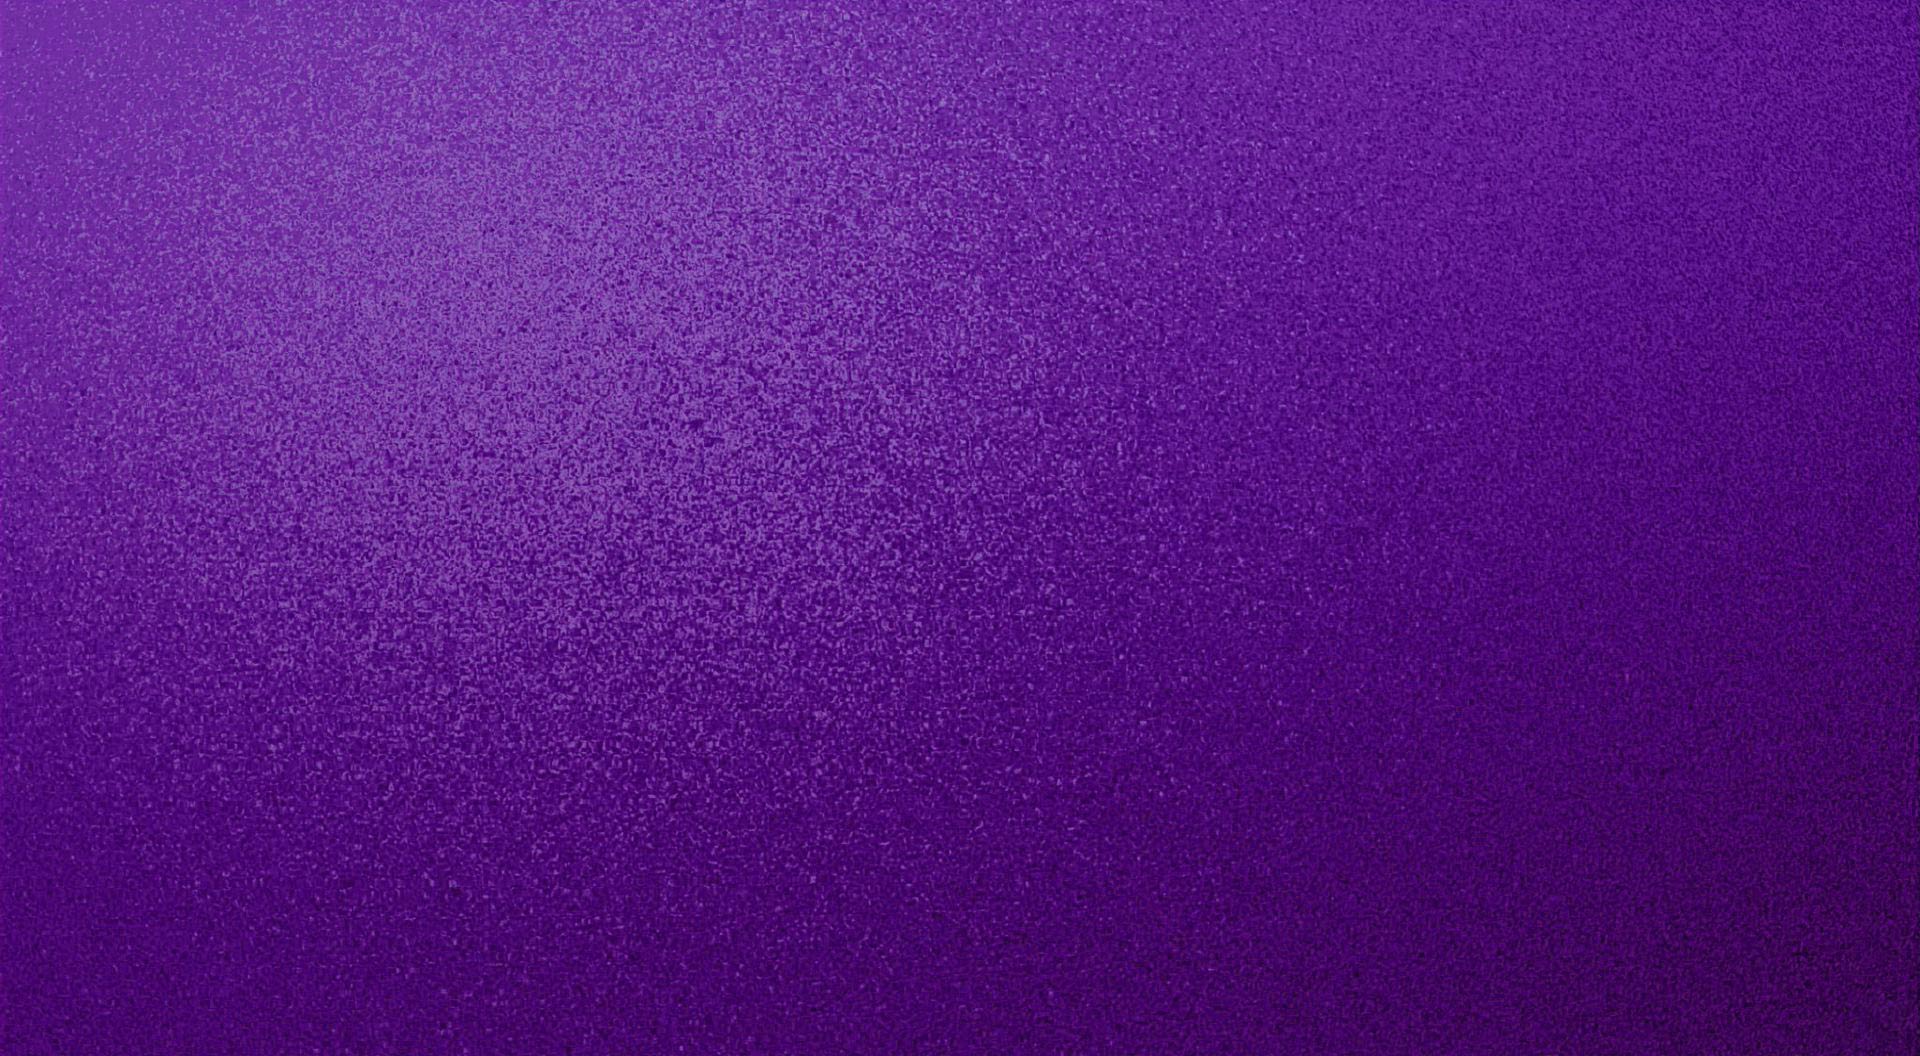 Violet purple textured speckled desktop background wallpaper for use